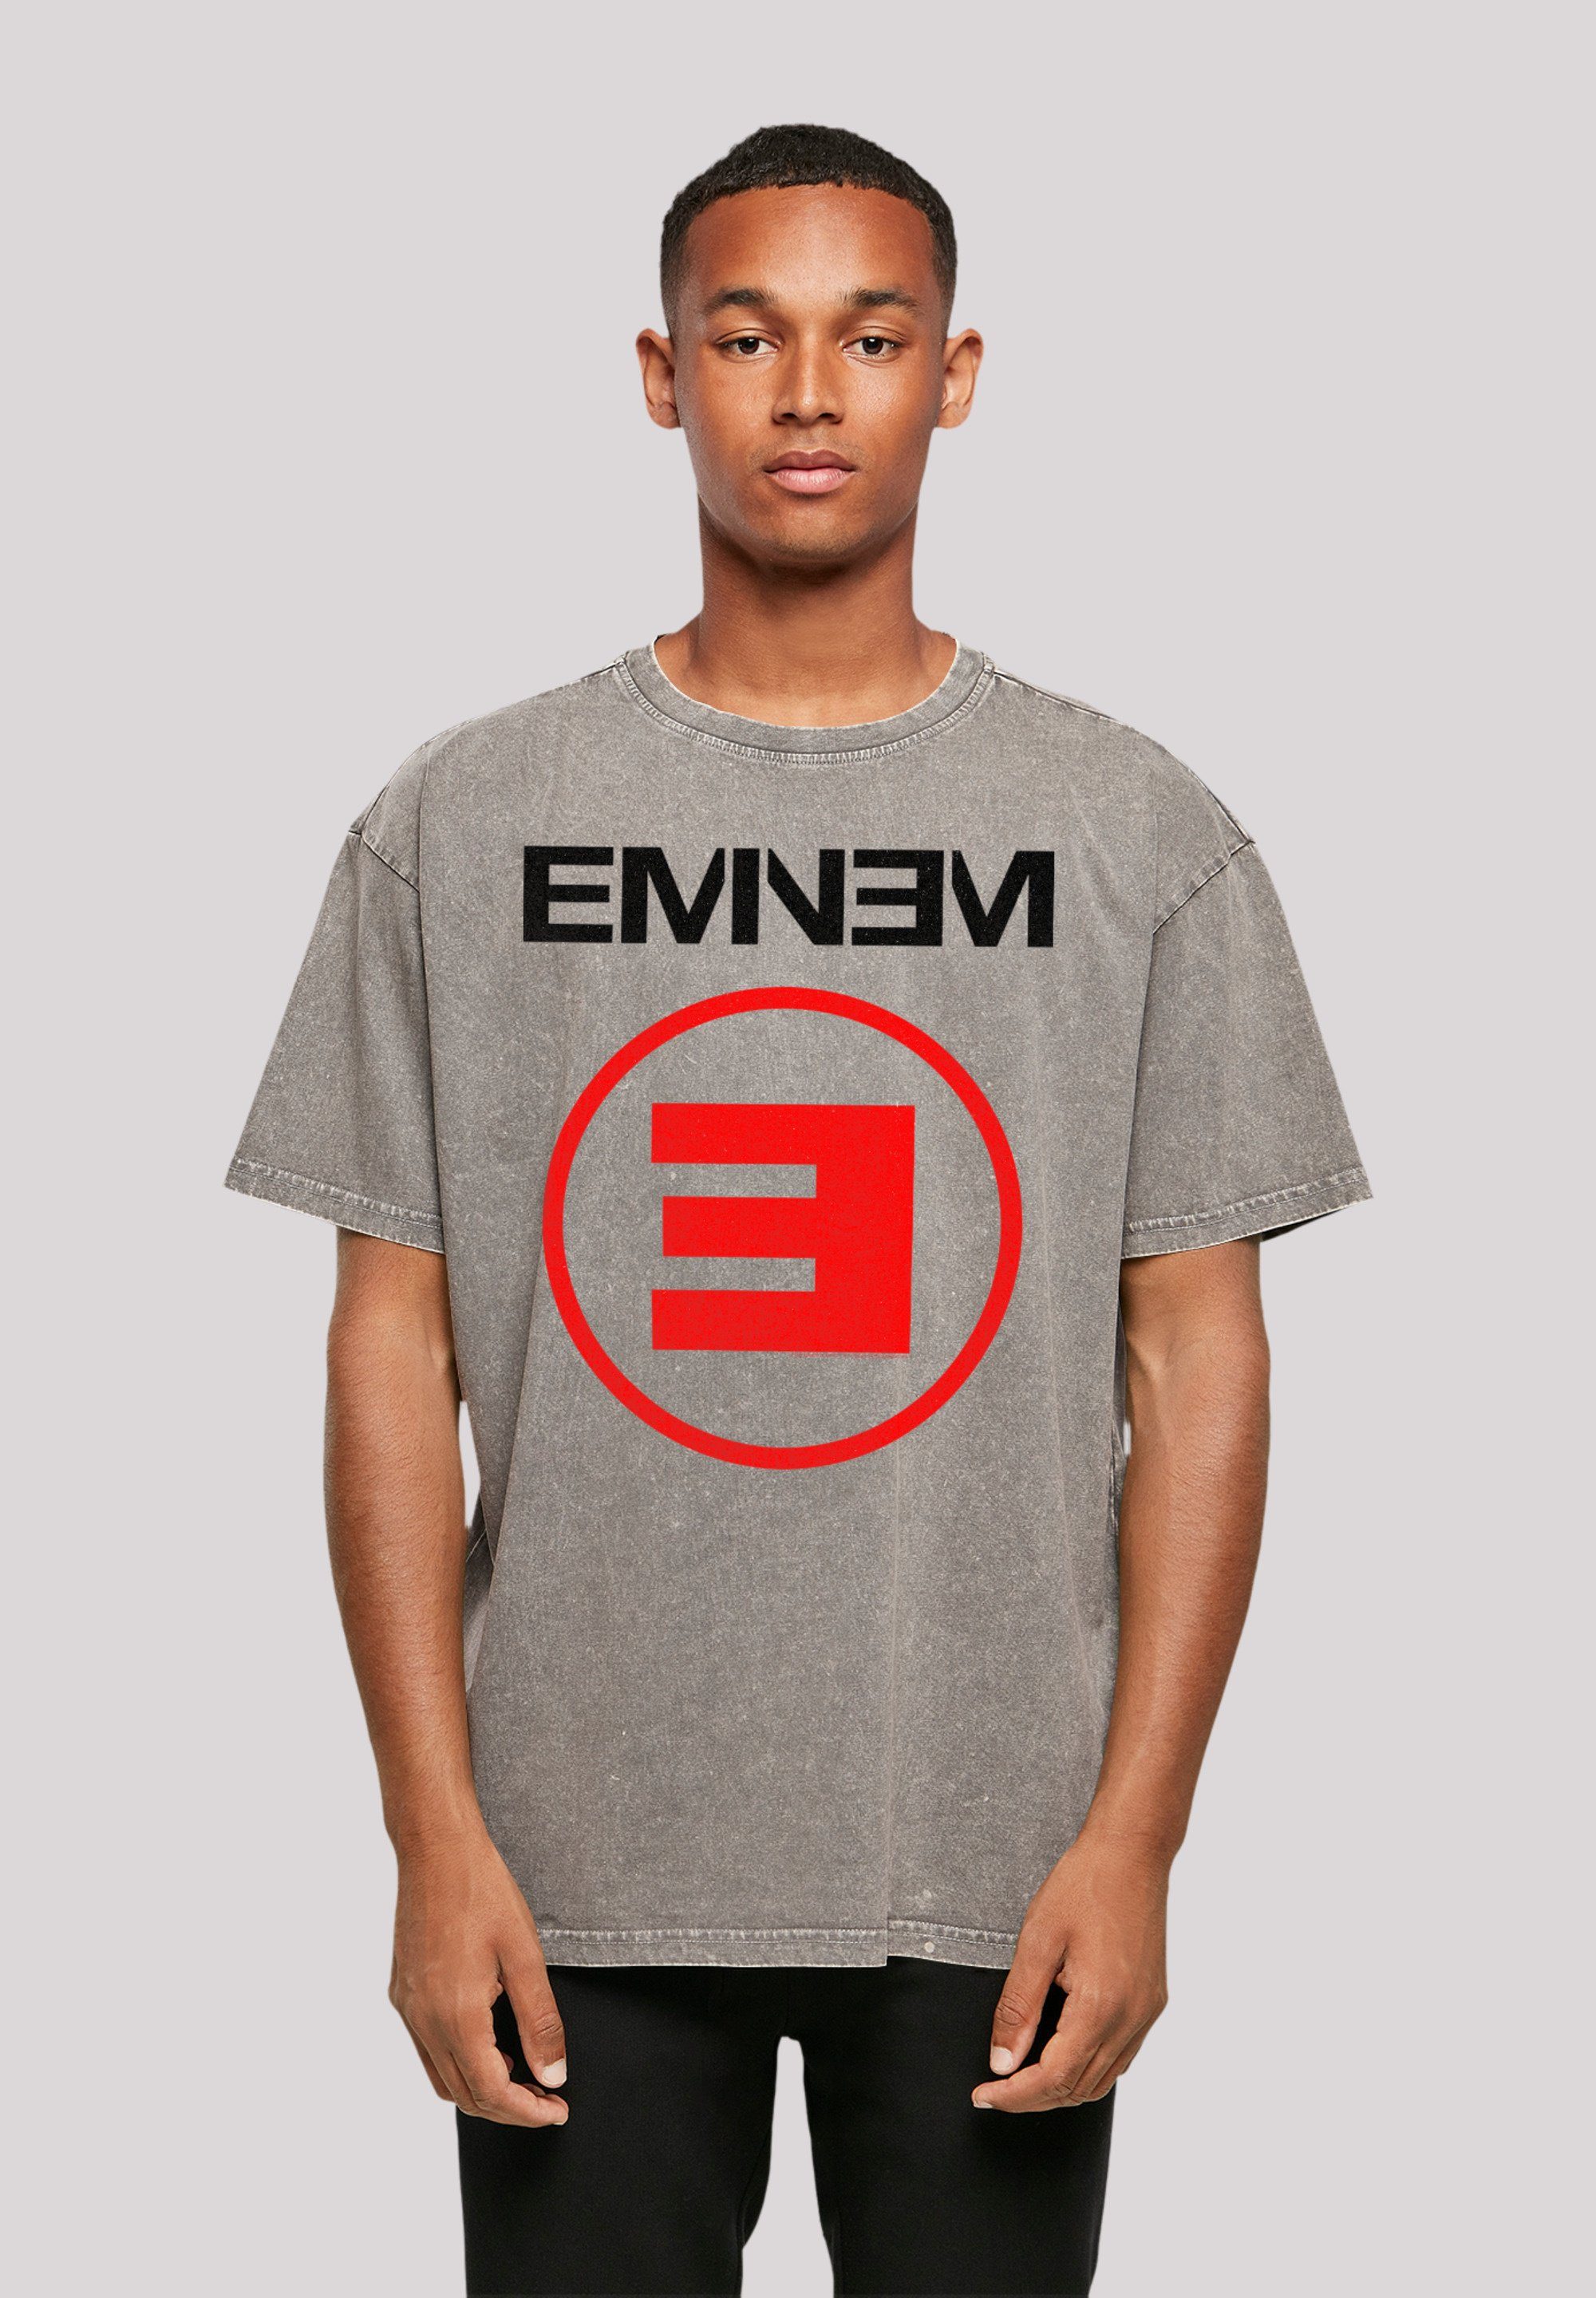 F4NT4STIC T-Shirt Eminem E Rap Hip Hop Music Premium Qualität, Musik, By Rock Off